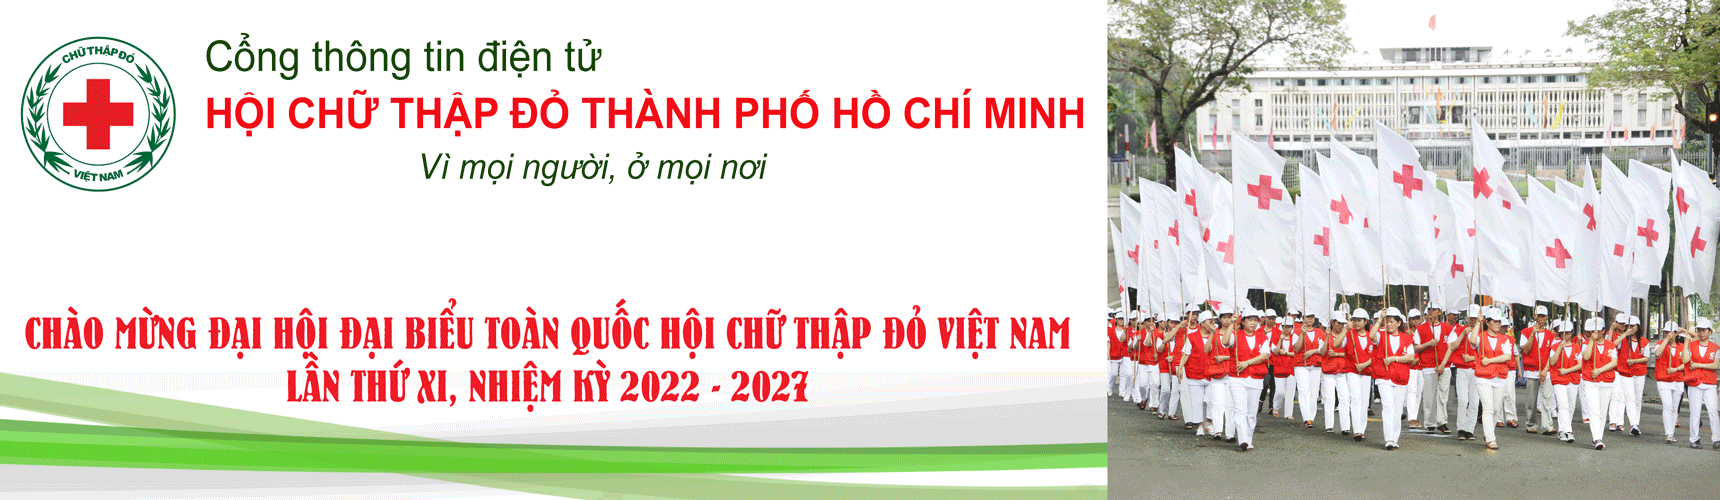 Hội Chữ thập đỏ Thành phố Hồ Chí Minh | Chức năng - nhiệm vụ